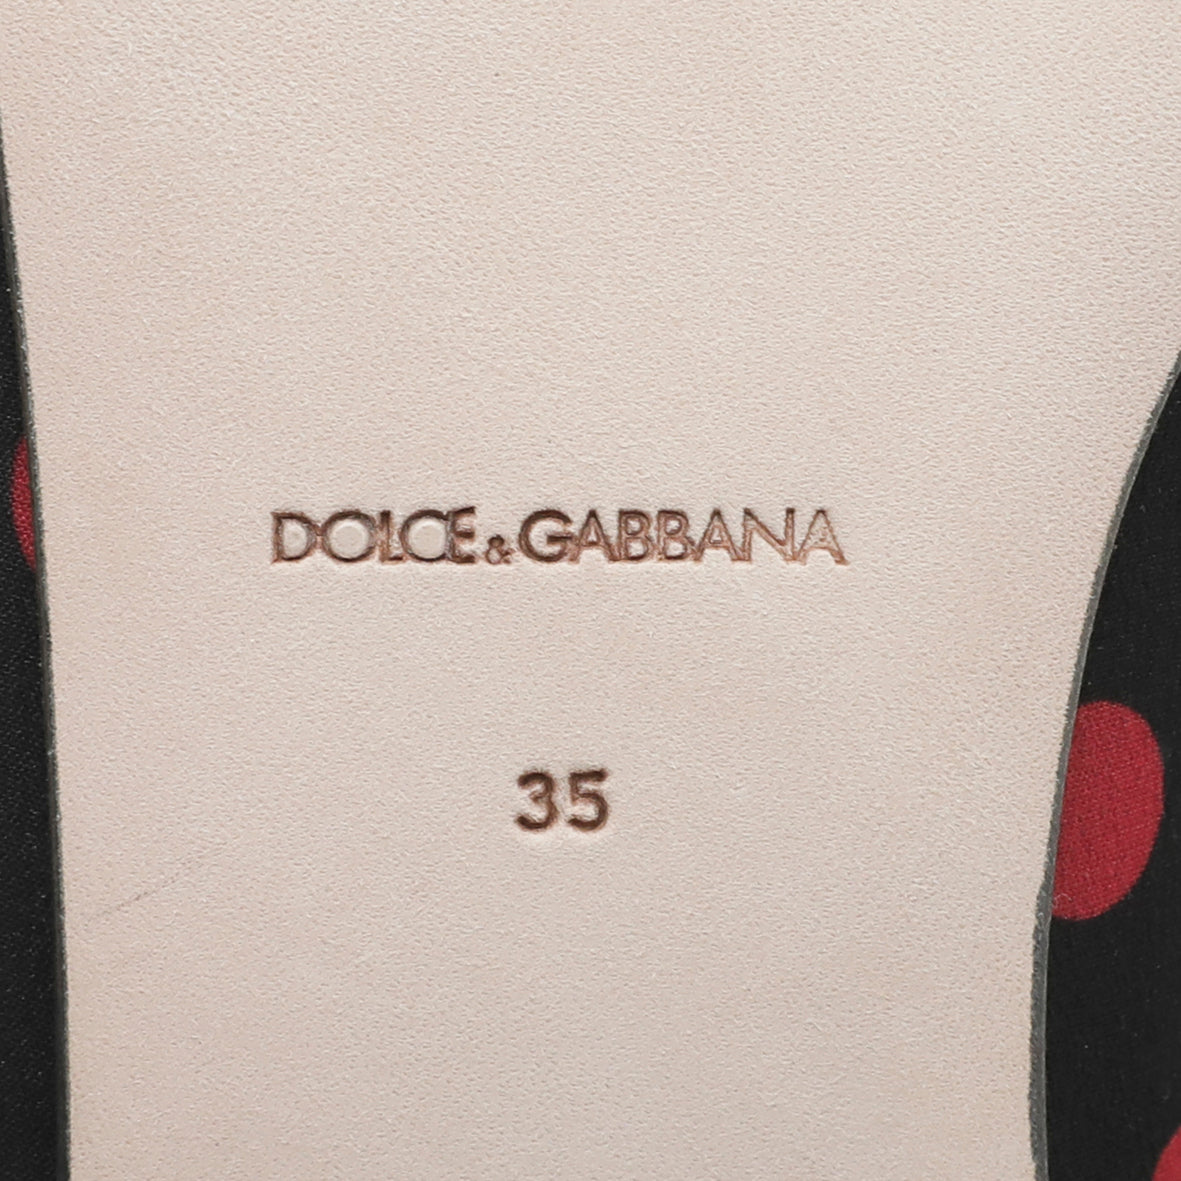 Dolce & Gabbana Bicolor Polka Dots Flat Ballerina 35